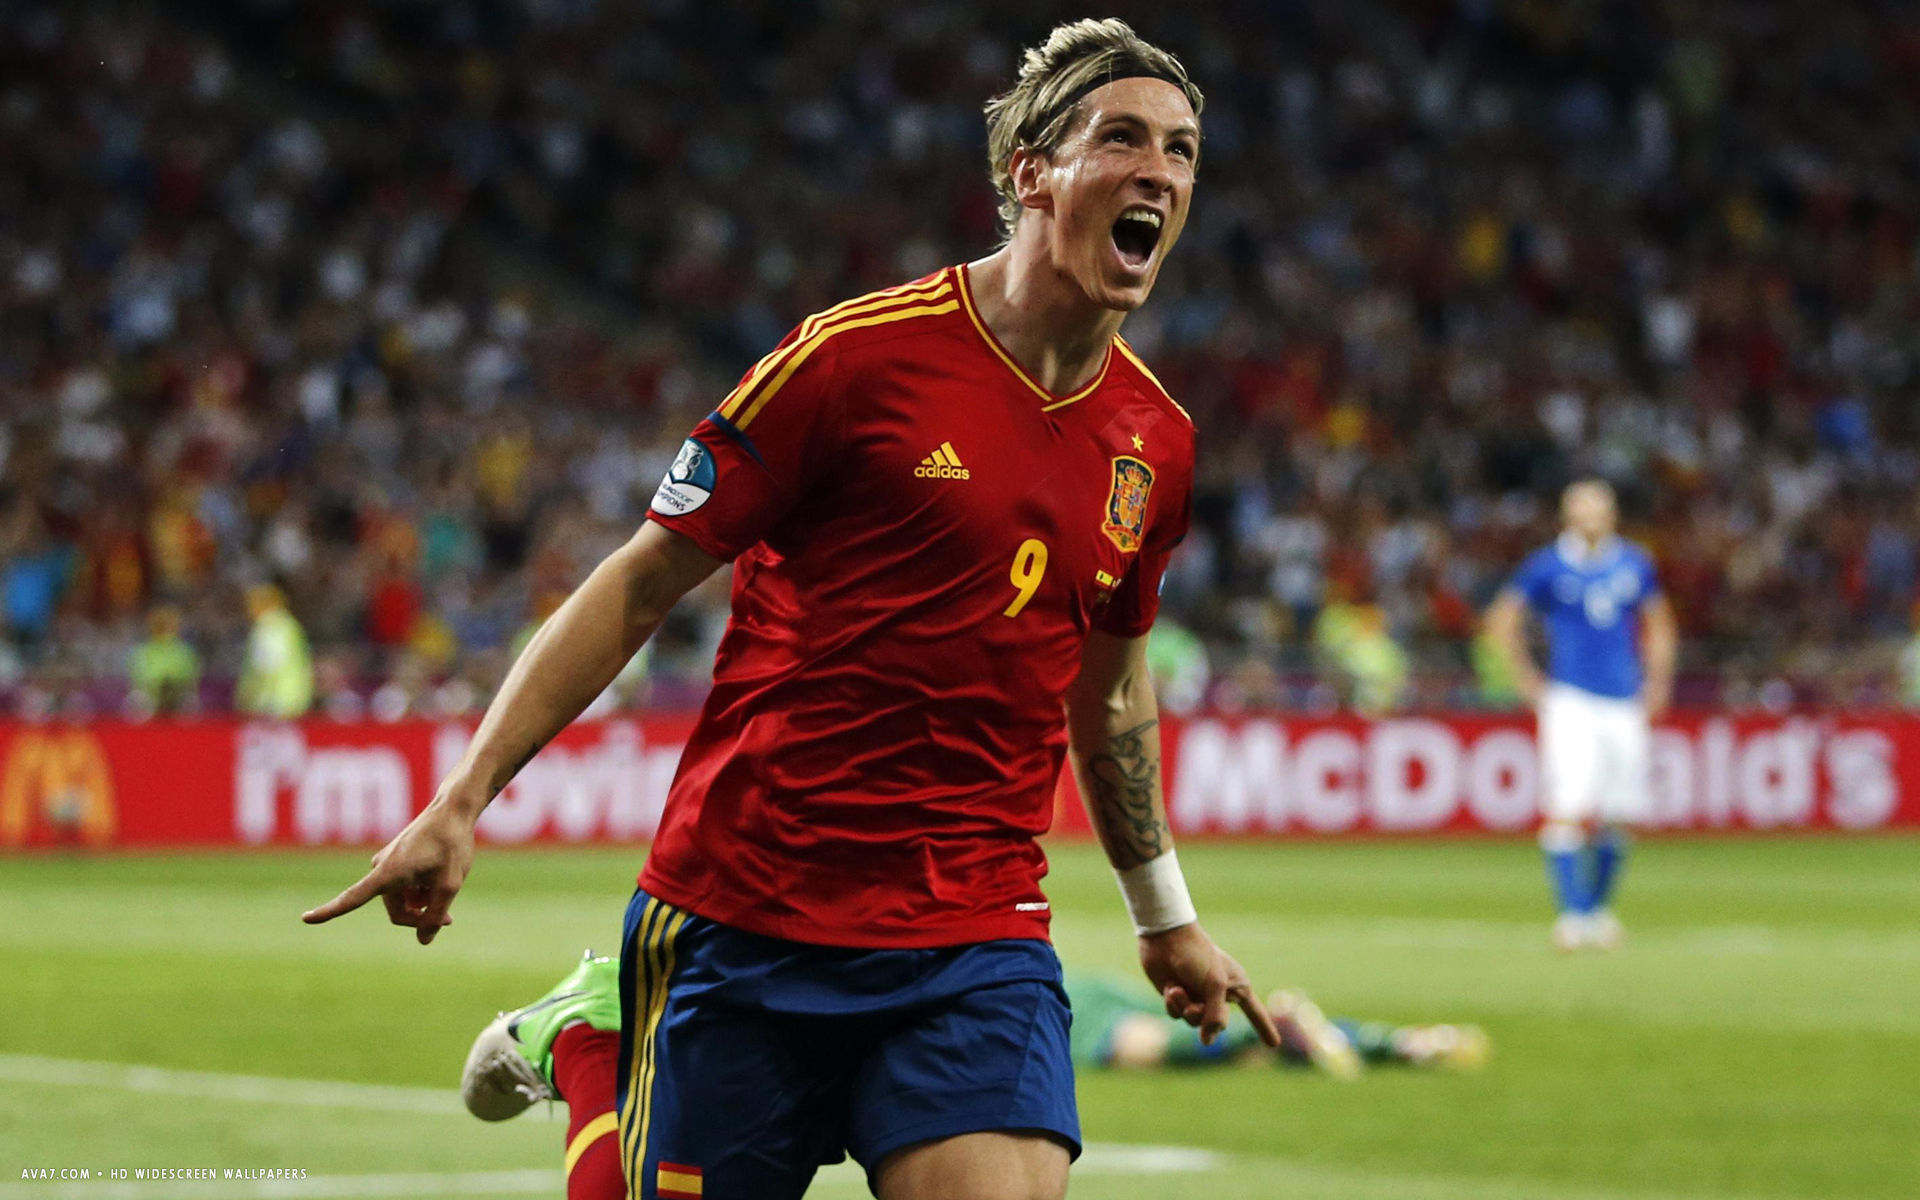 Fernando Torres Football Player HD Widescreen Wallpaper